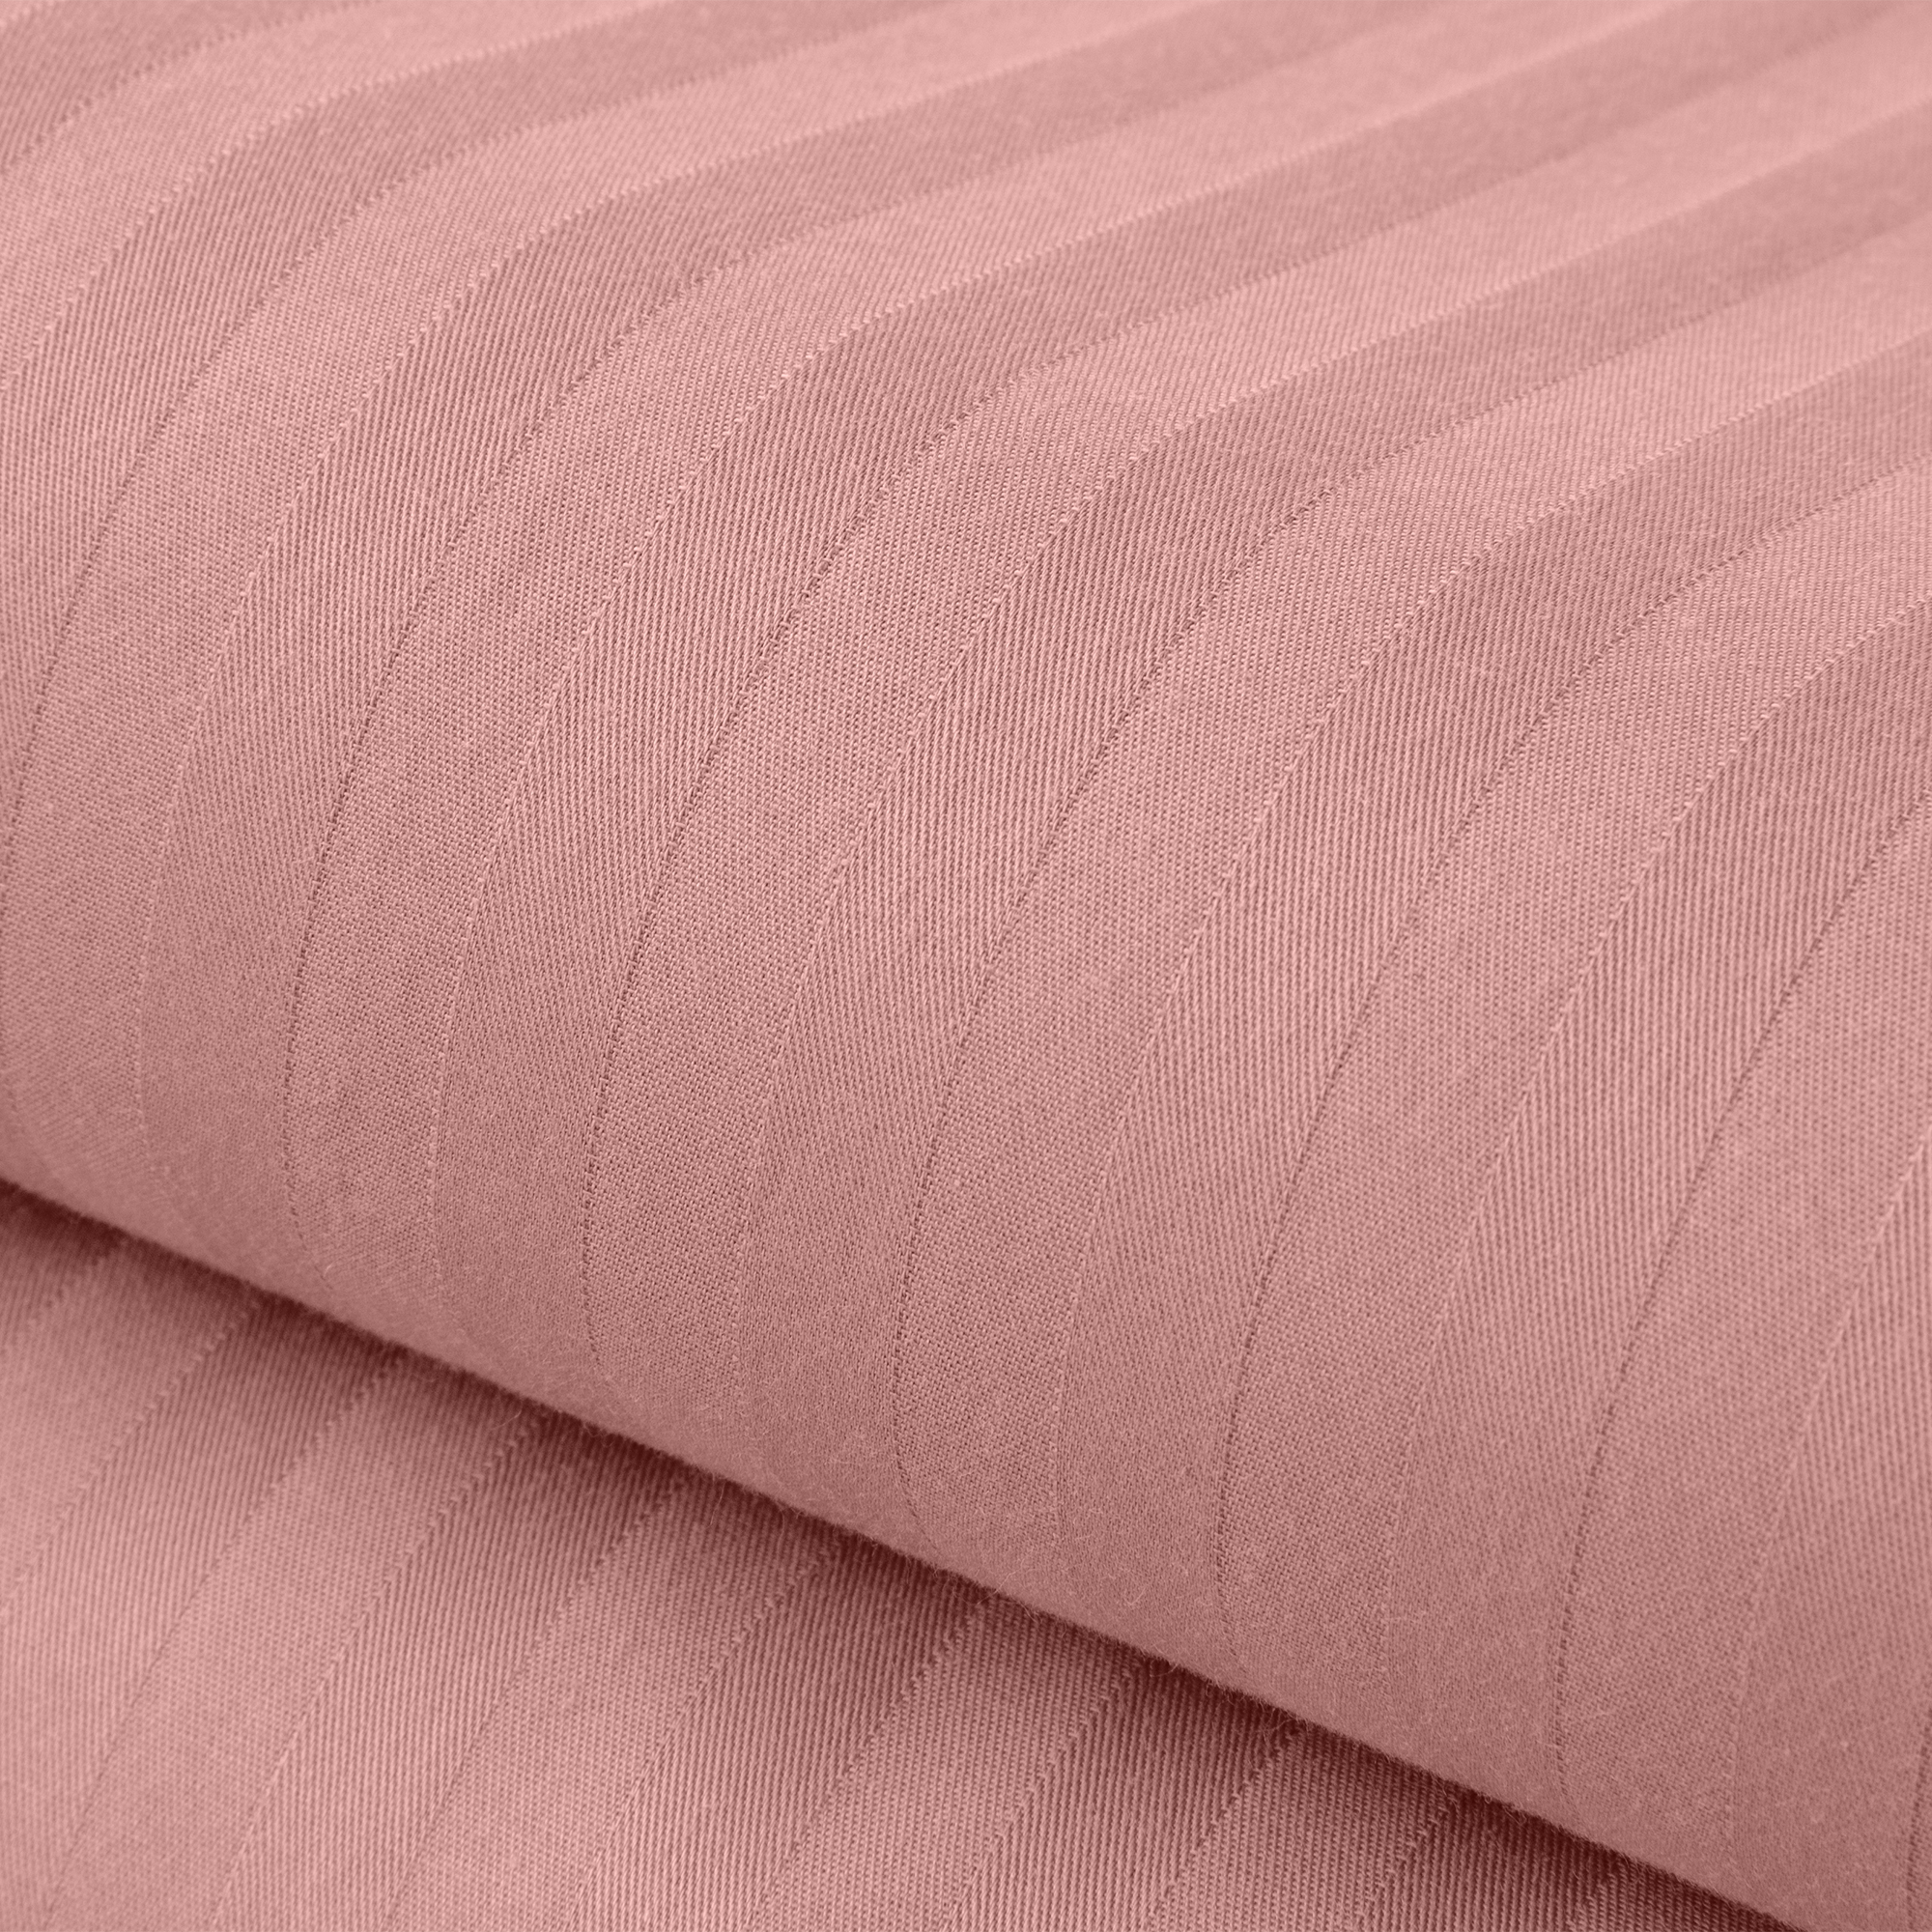 Комплект постельного белья Verossa 1.5СП Rouge страйп-сатин наволочки 70х70см 100% хлопок - фото 8